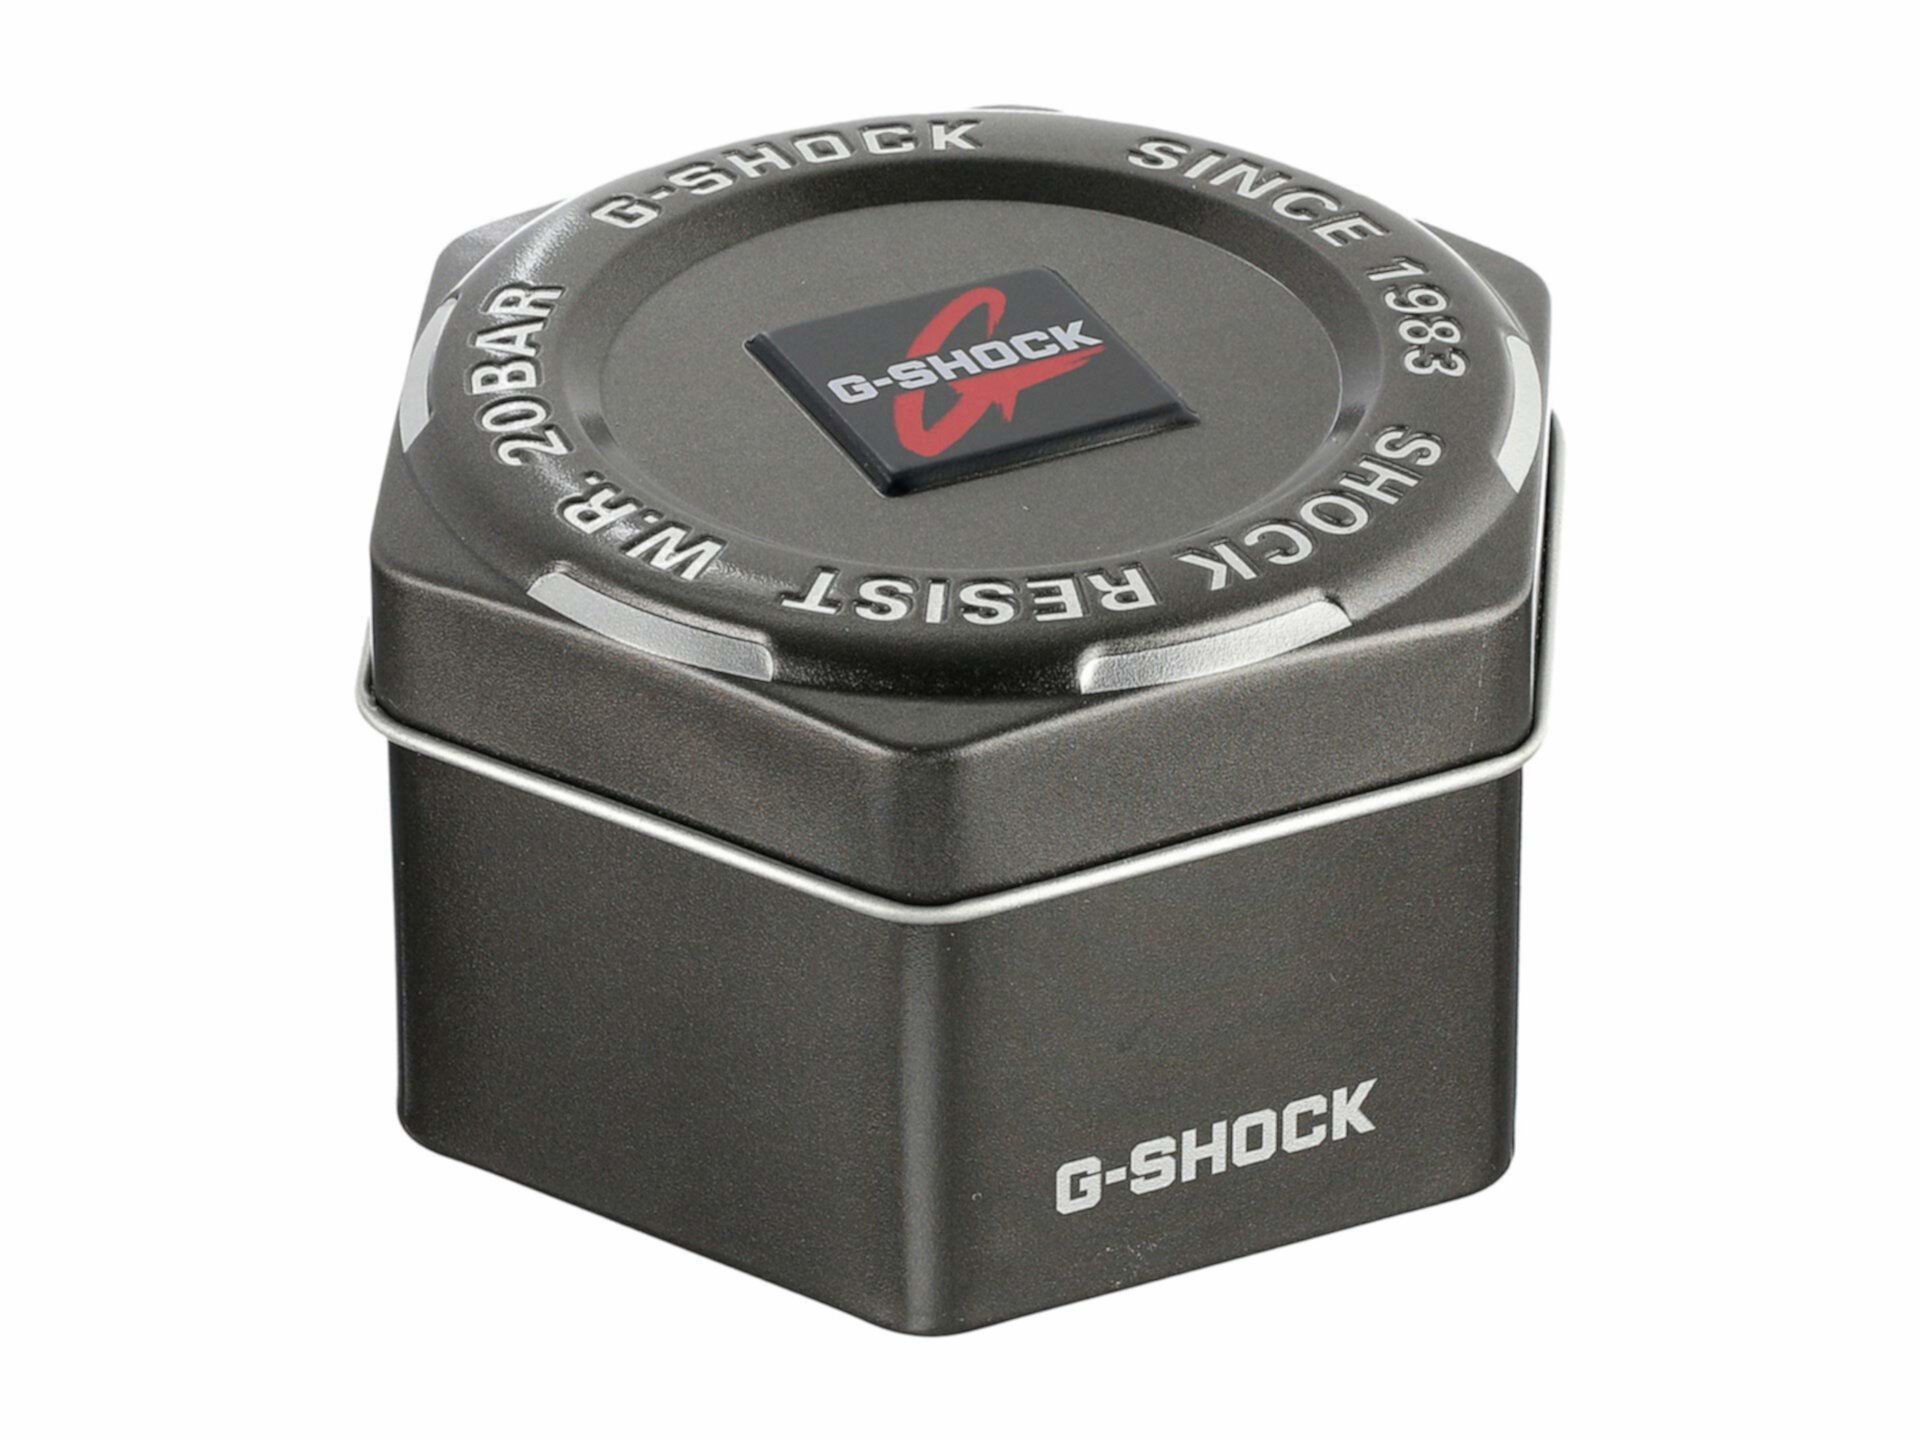 GBD800UC-8 G-Shock